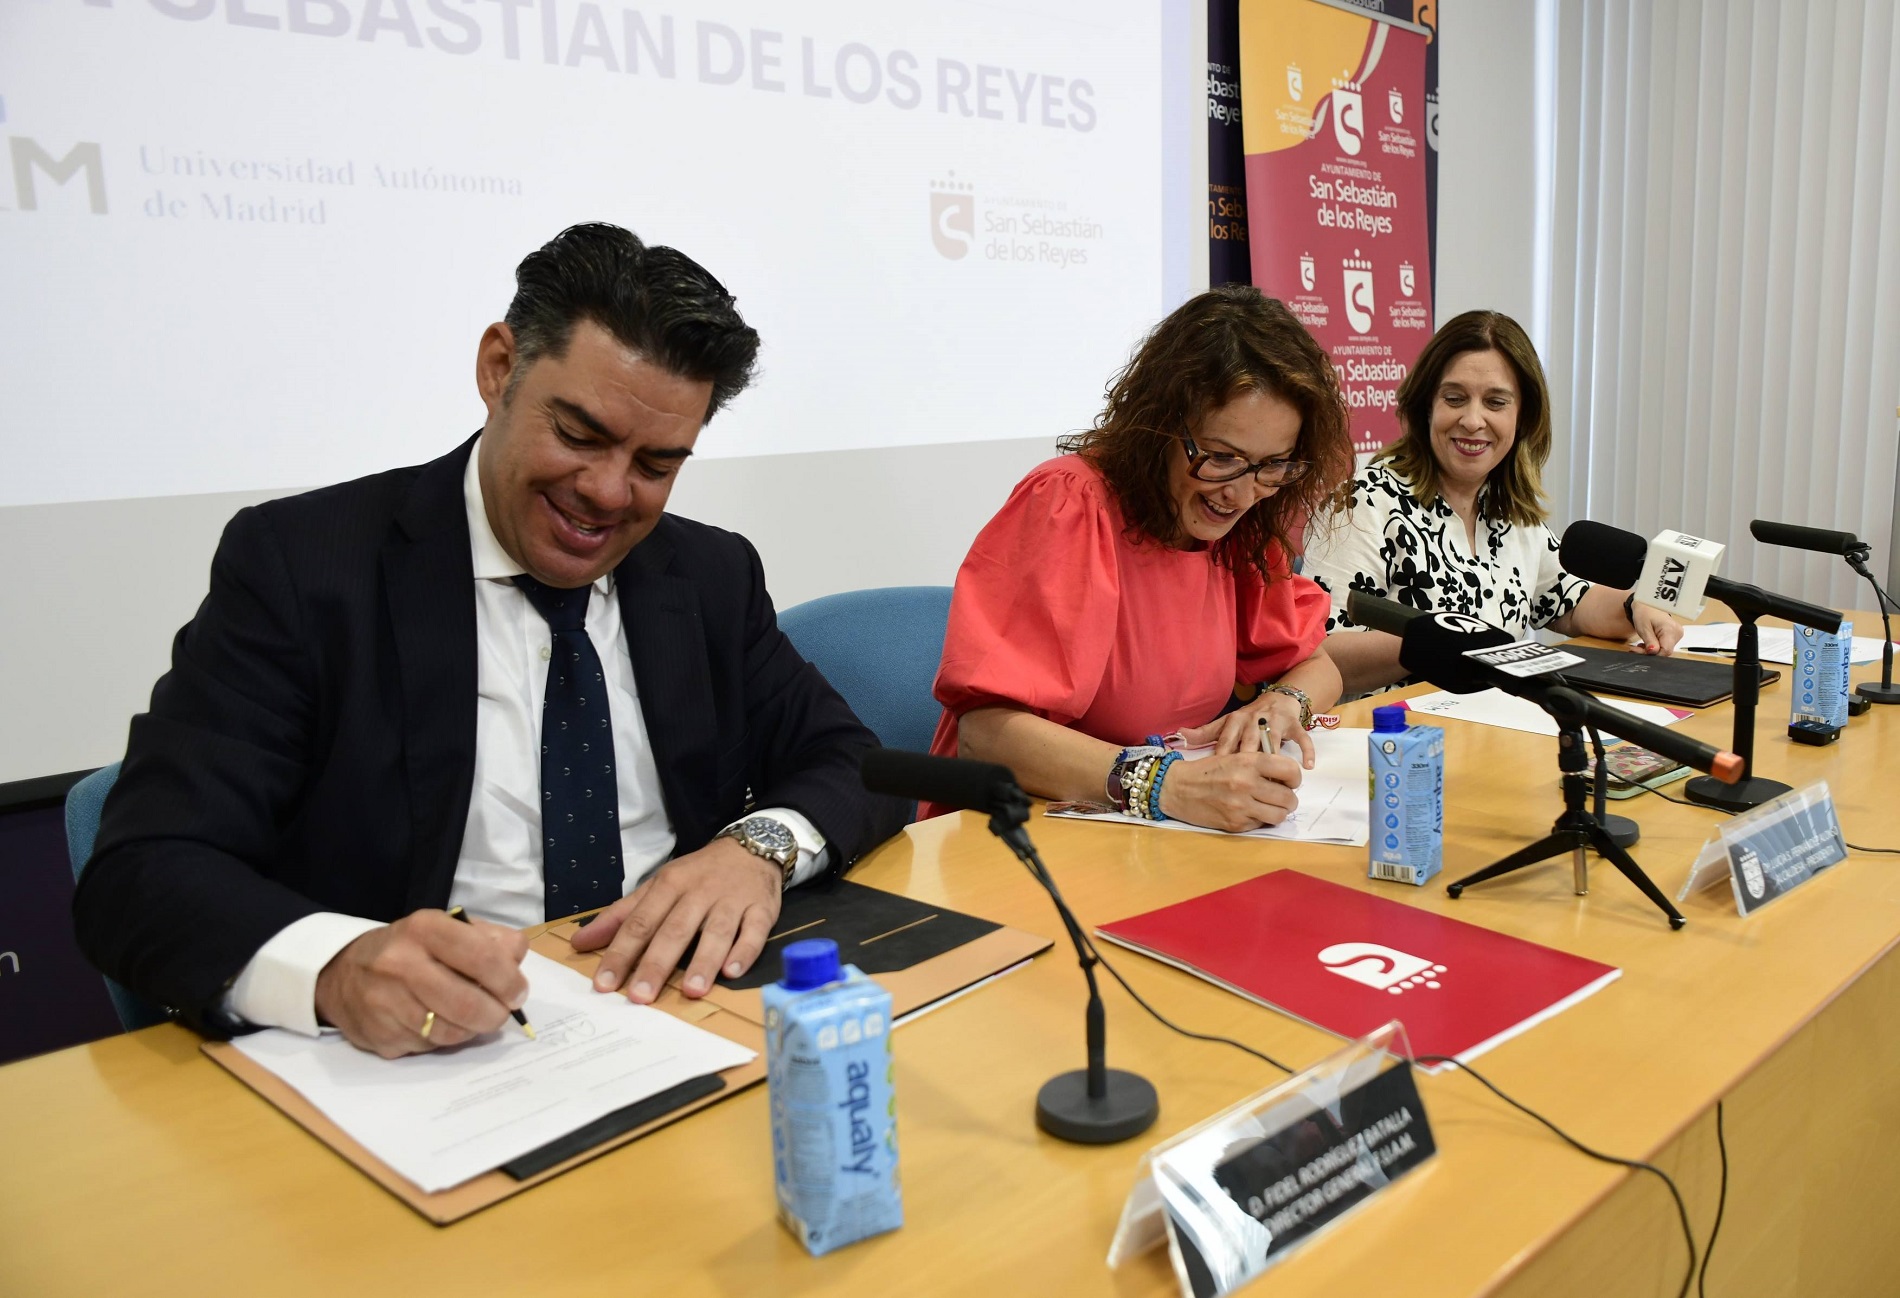 UAM y San Sebastián de los Reyes firman acuerdo Aula+50